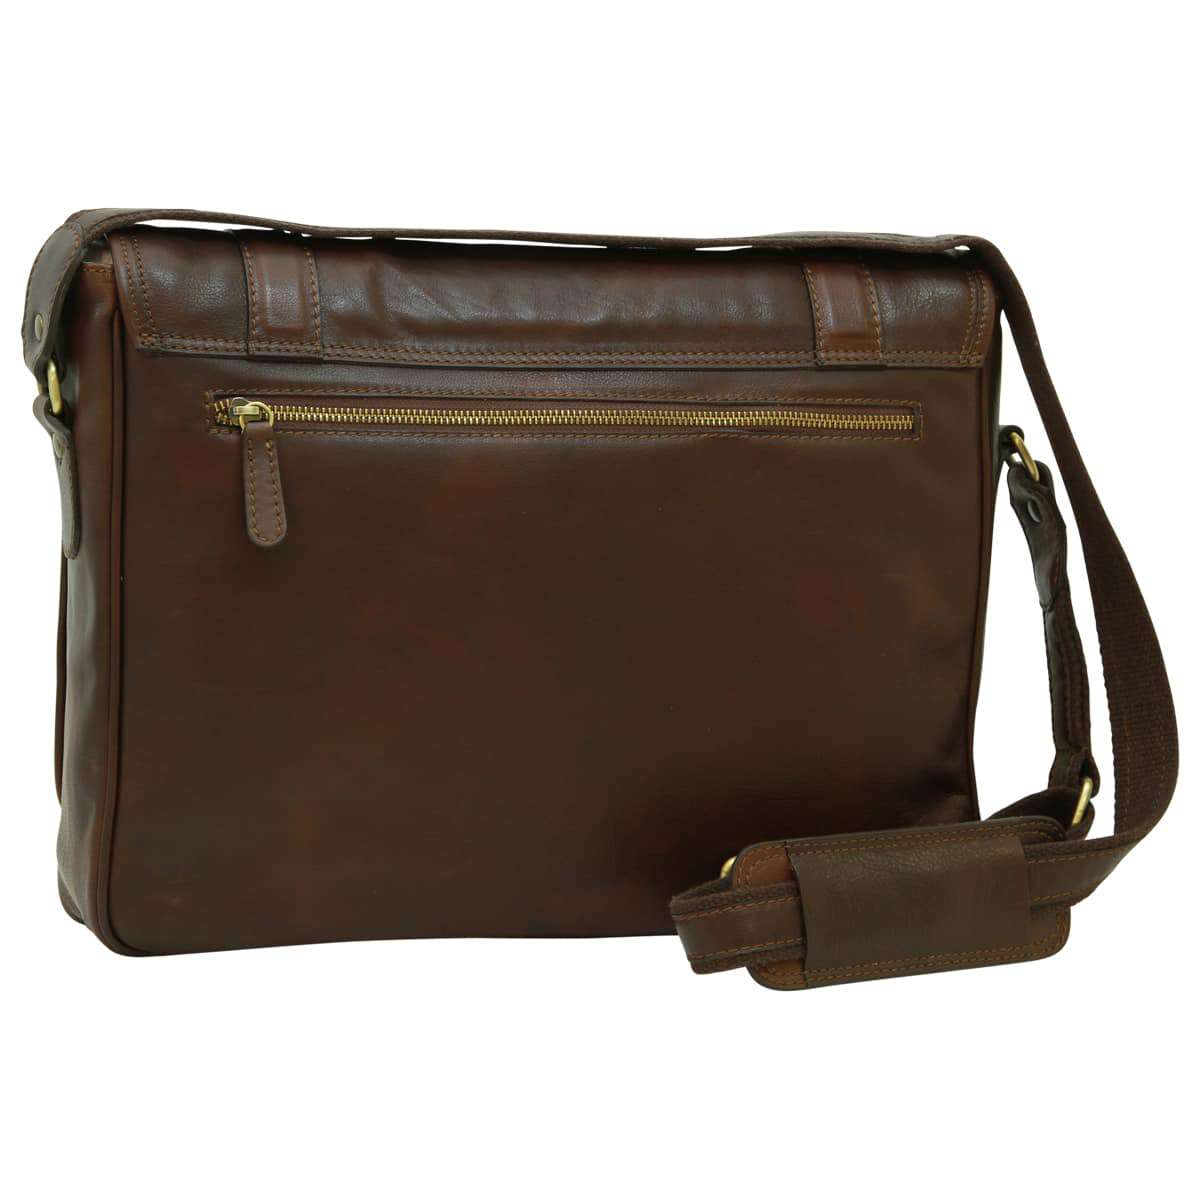 Soft Calfskin Leather Messenger Bag - Dark Brown | 030491TM US | Old Angler Firenze